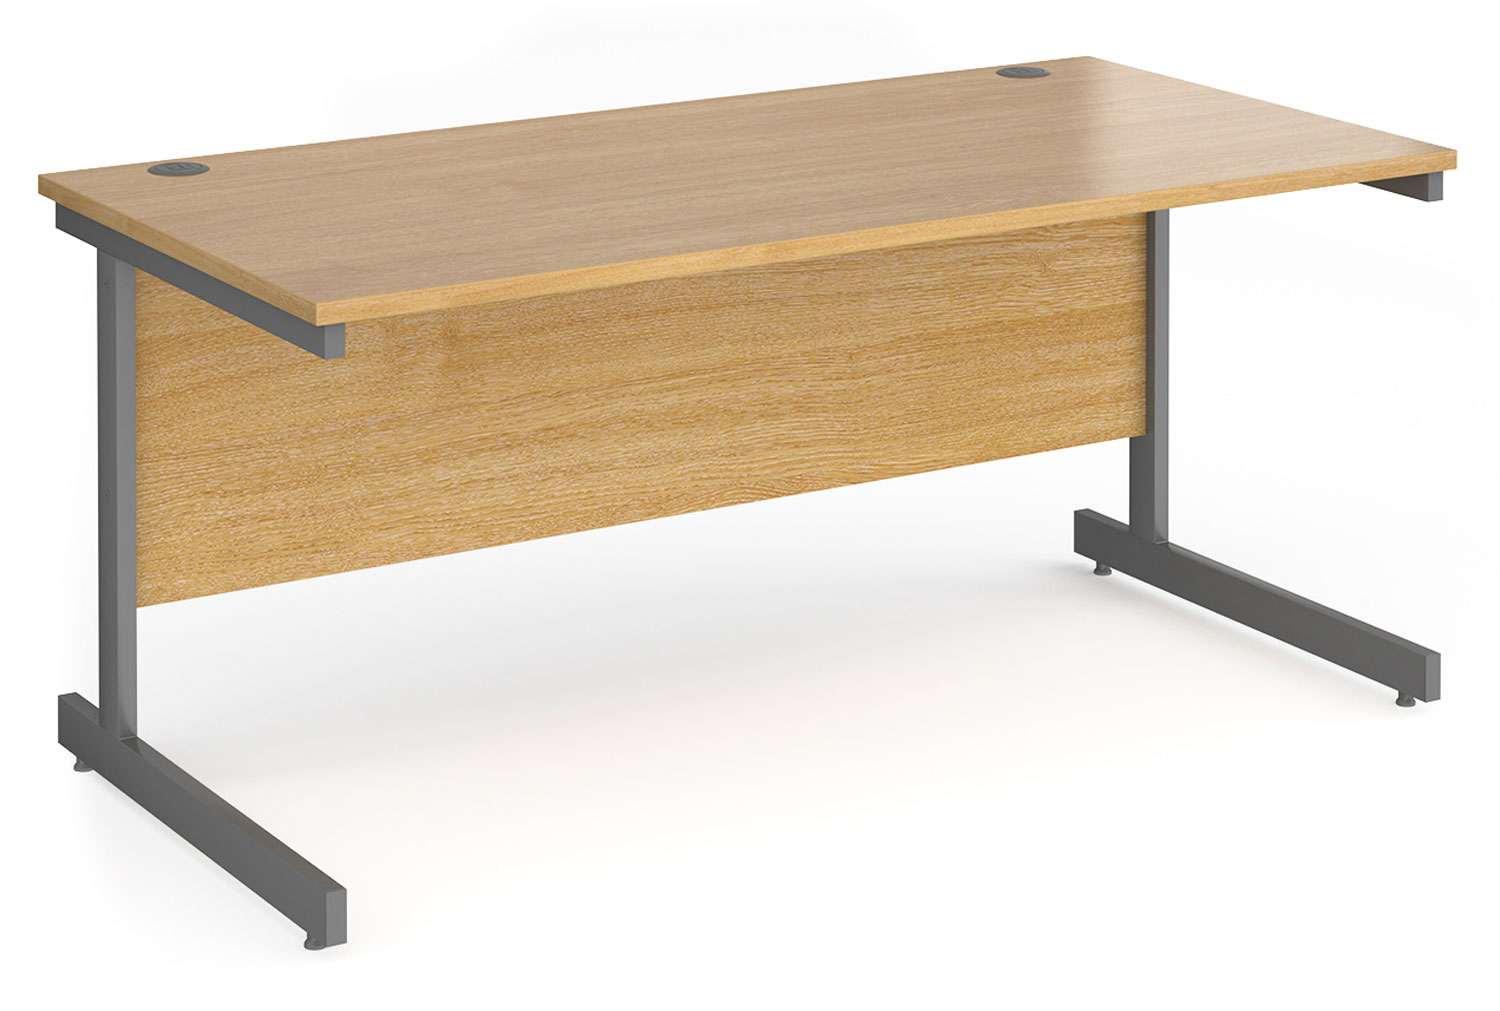 Value Line Classic+ Rectangular C-Leg Office Desk (Graphite Leg), 160wx80dx73h (cm), Oak, Express Delivery